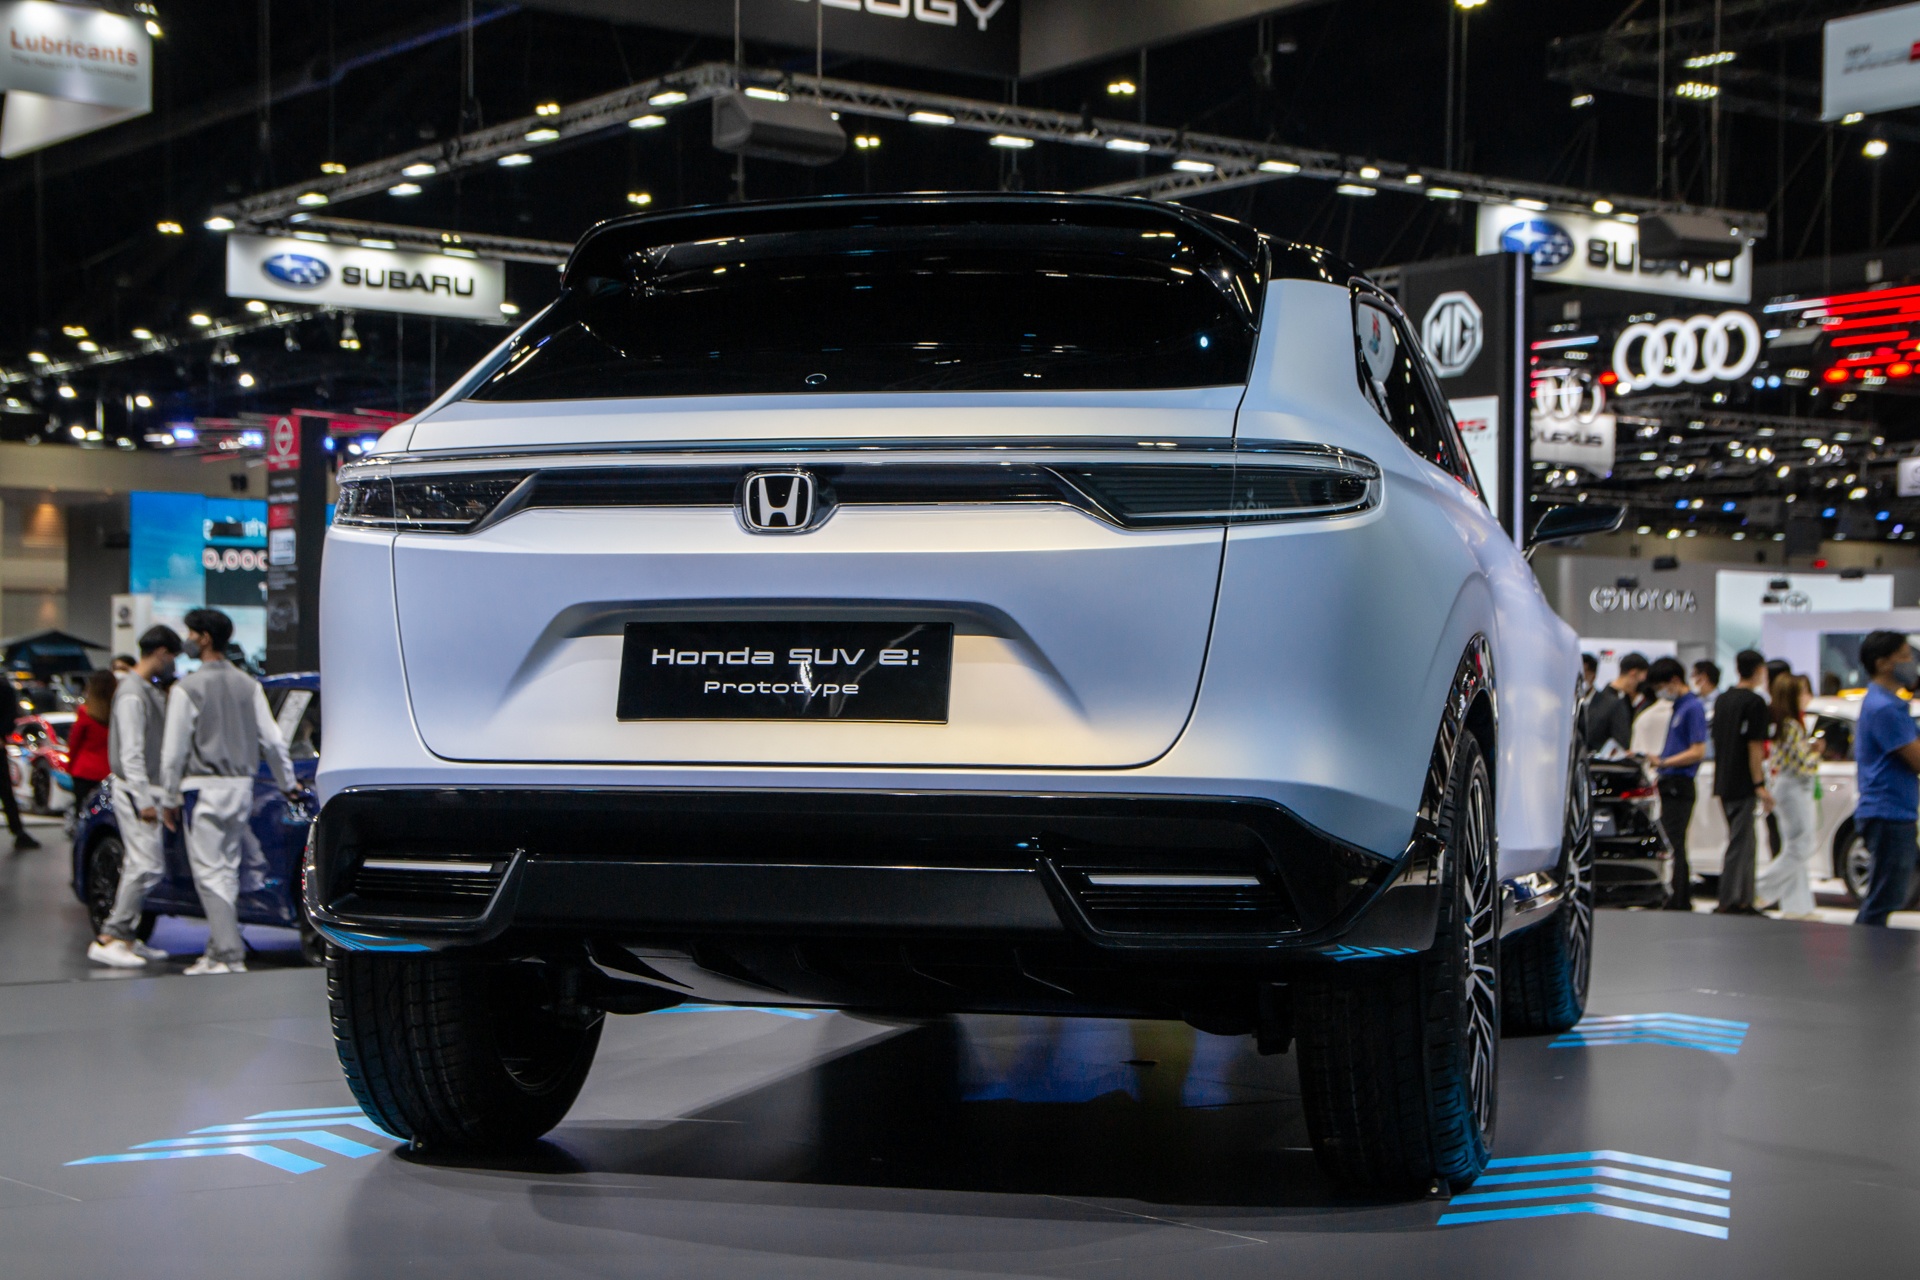 Honda SUV e:Prototype lần đầu được ra mắt tại Đông Nam Á - ảnh 6